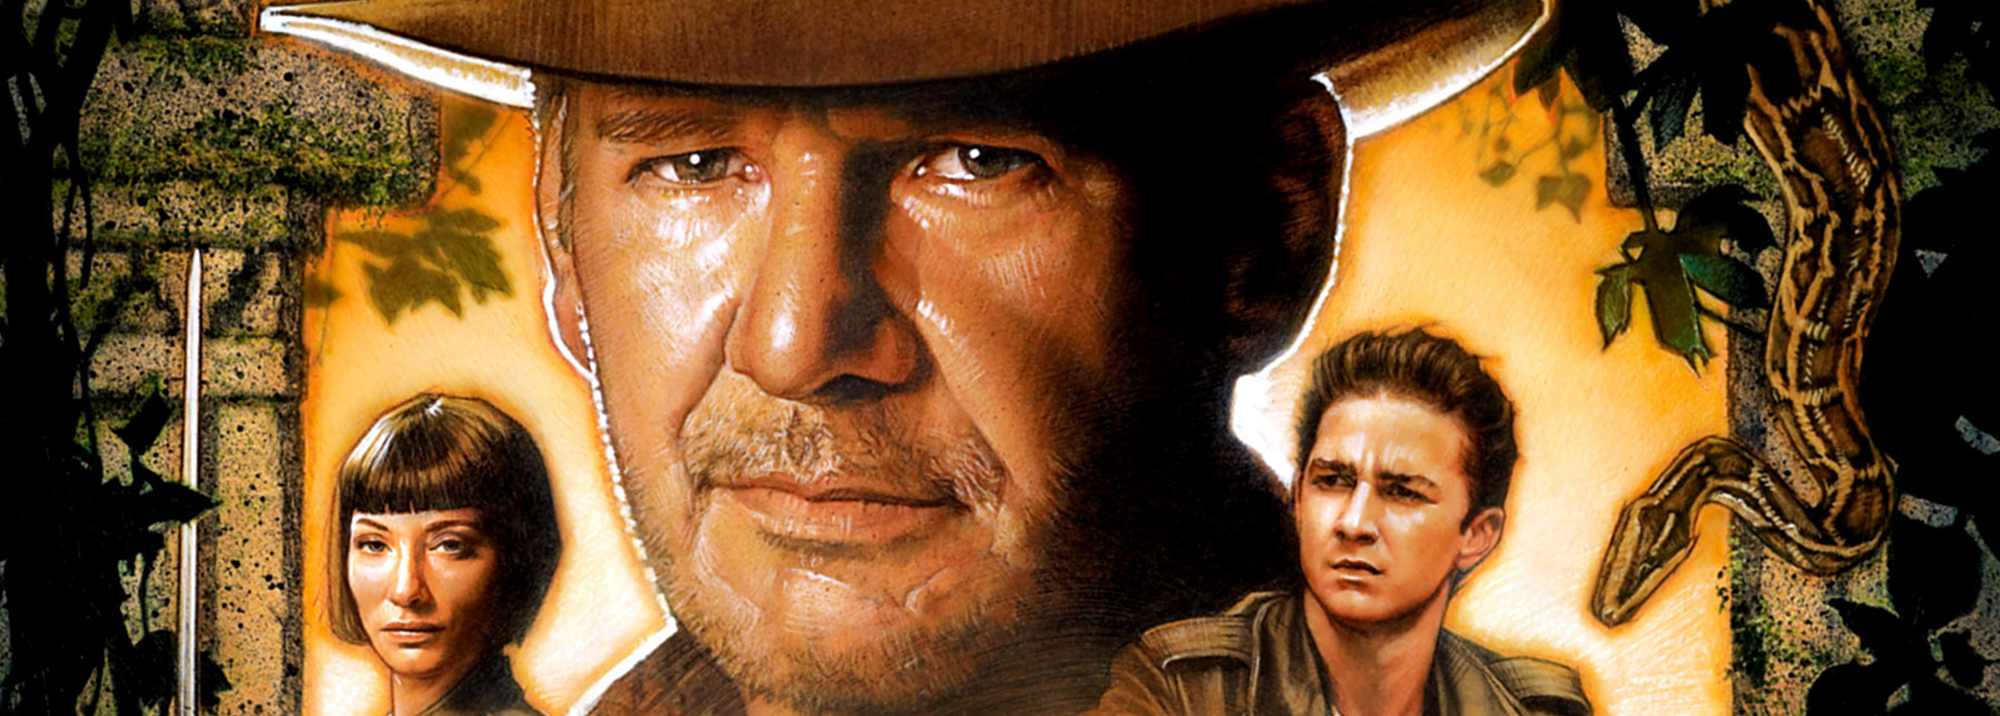 De Indiana Jones-films komen naar Disney+